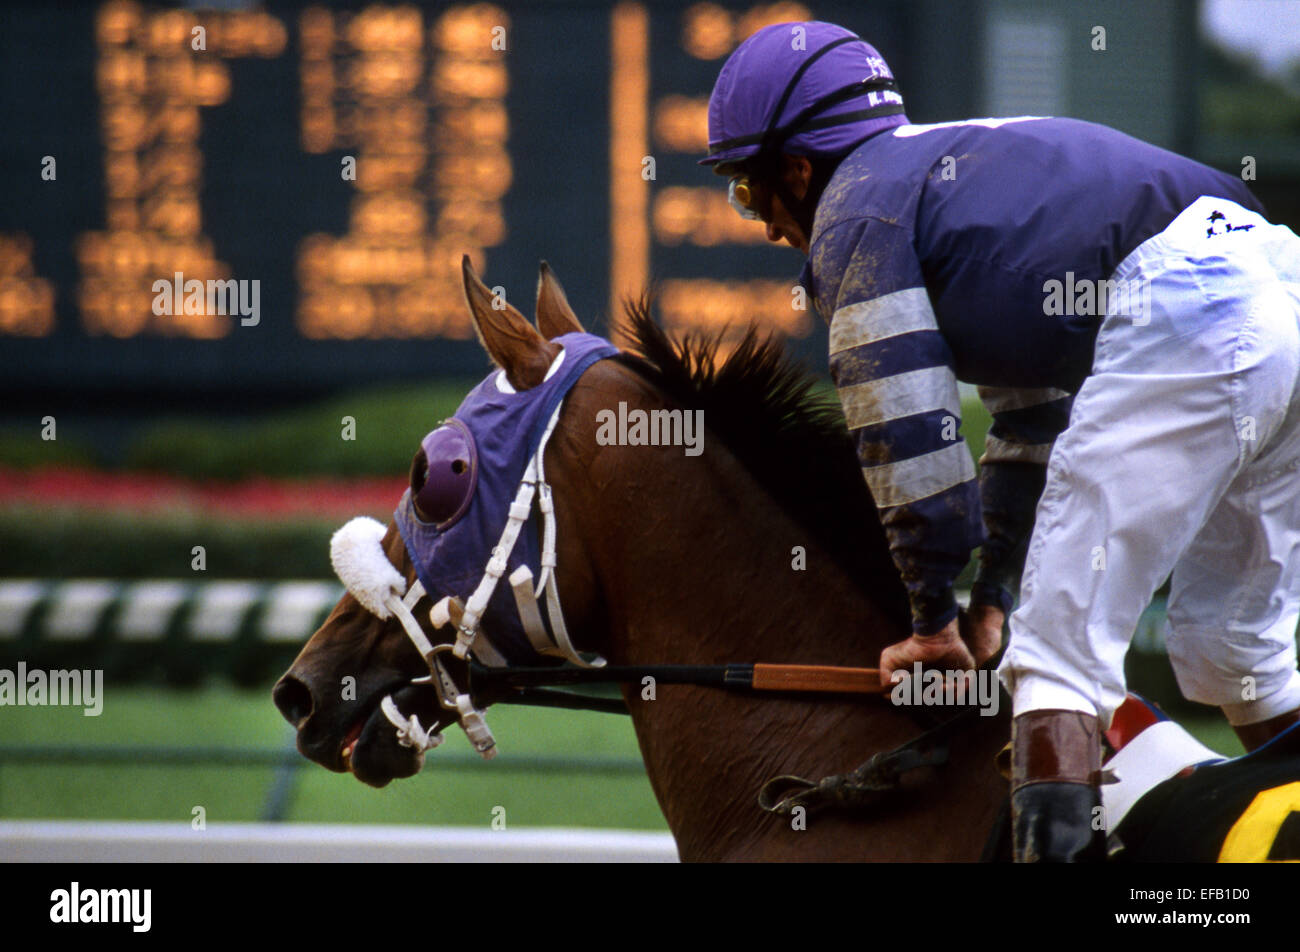 Cheval de course, Jockey en soie pourpre, et tableau de bord Banque D'Images